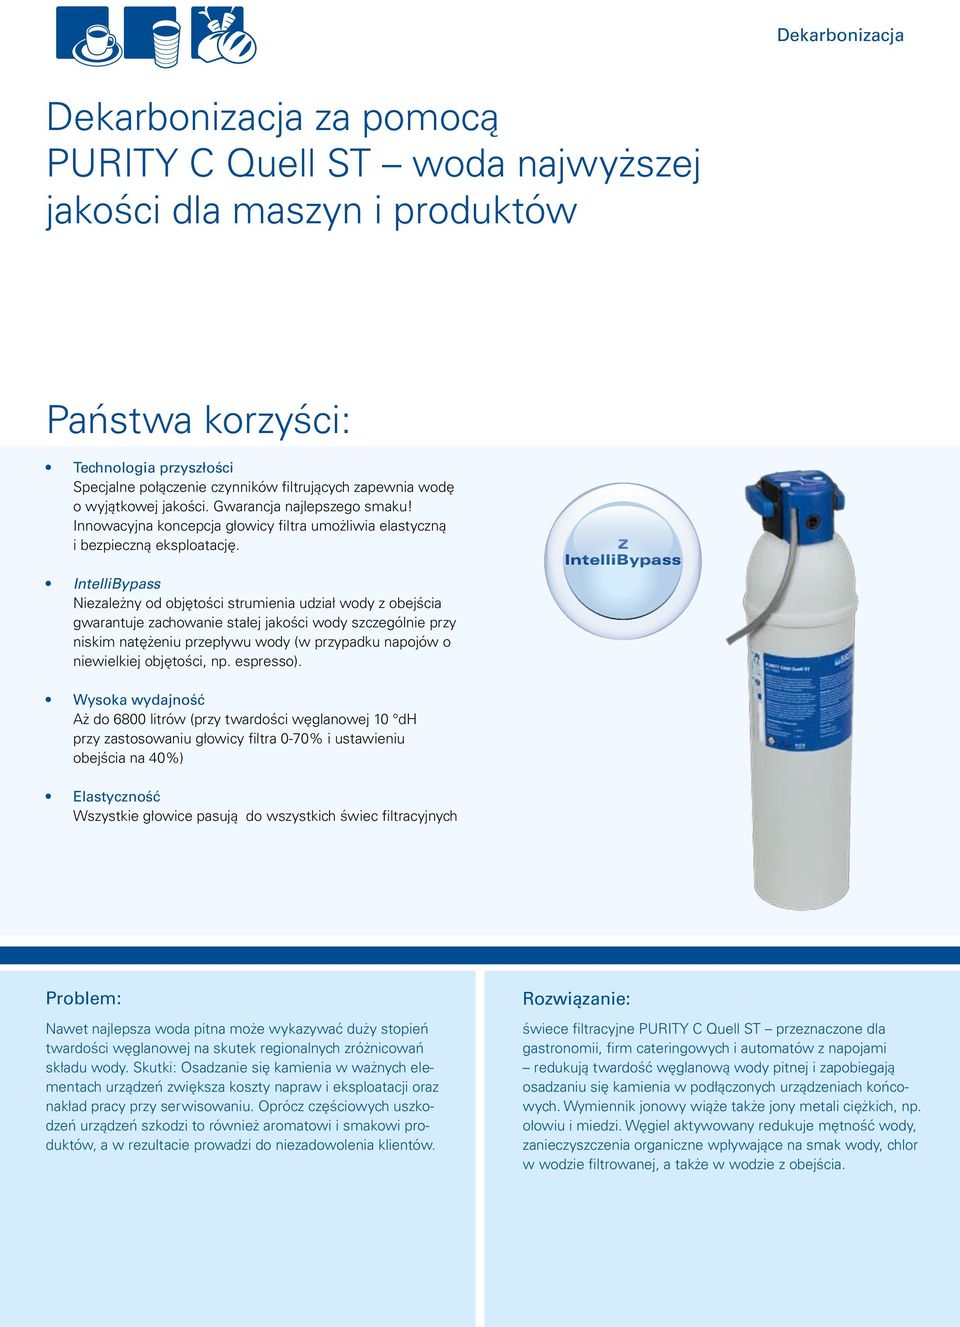 IntelliBypass Niezależny od objętości strumienia udział wody z obejścia gwarantuje zachowanie stałej jakości wody szczególnie przy niskim natężeniu przepływu wody (w przypadku napojów o niewielkiej